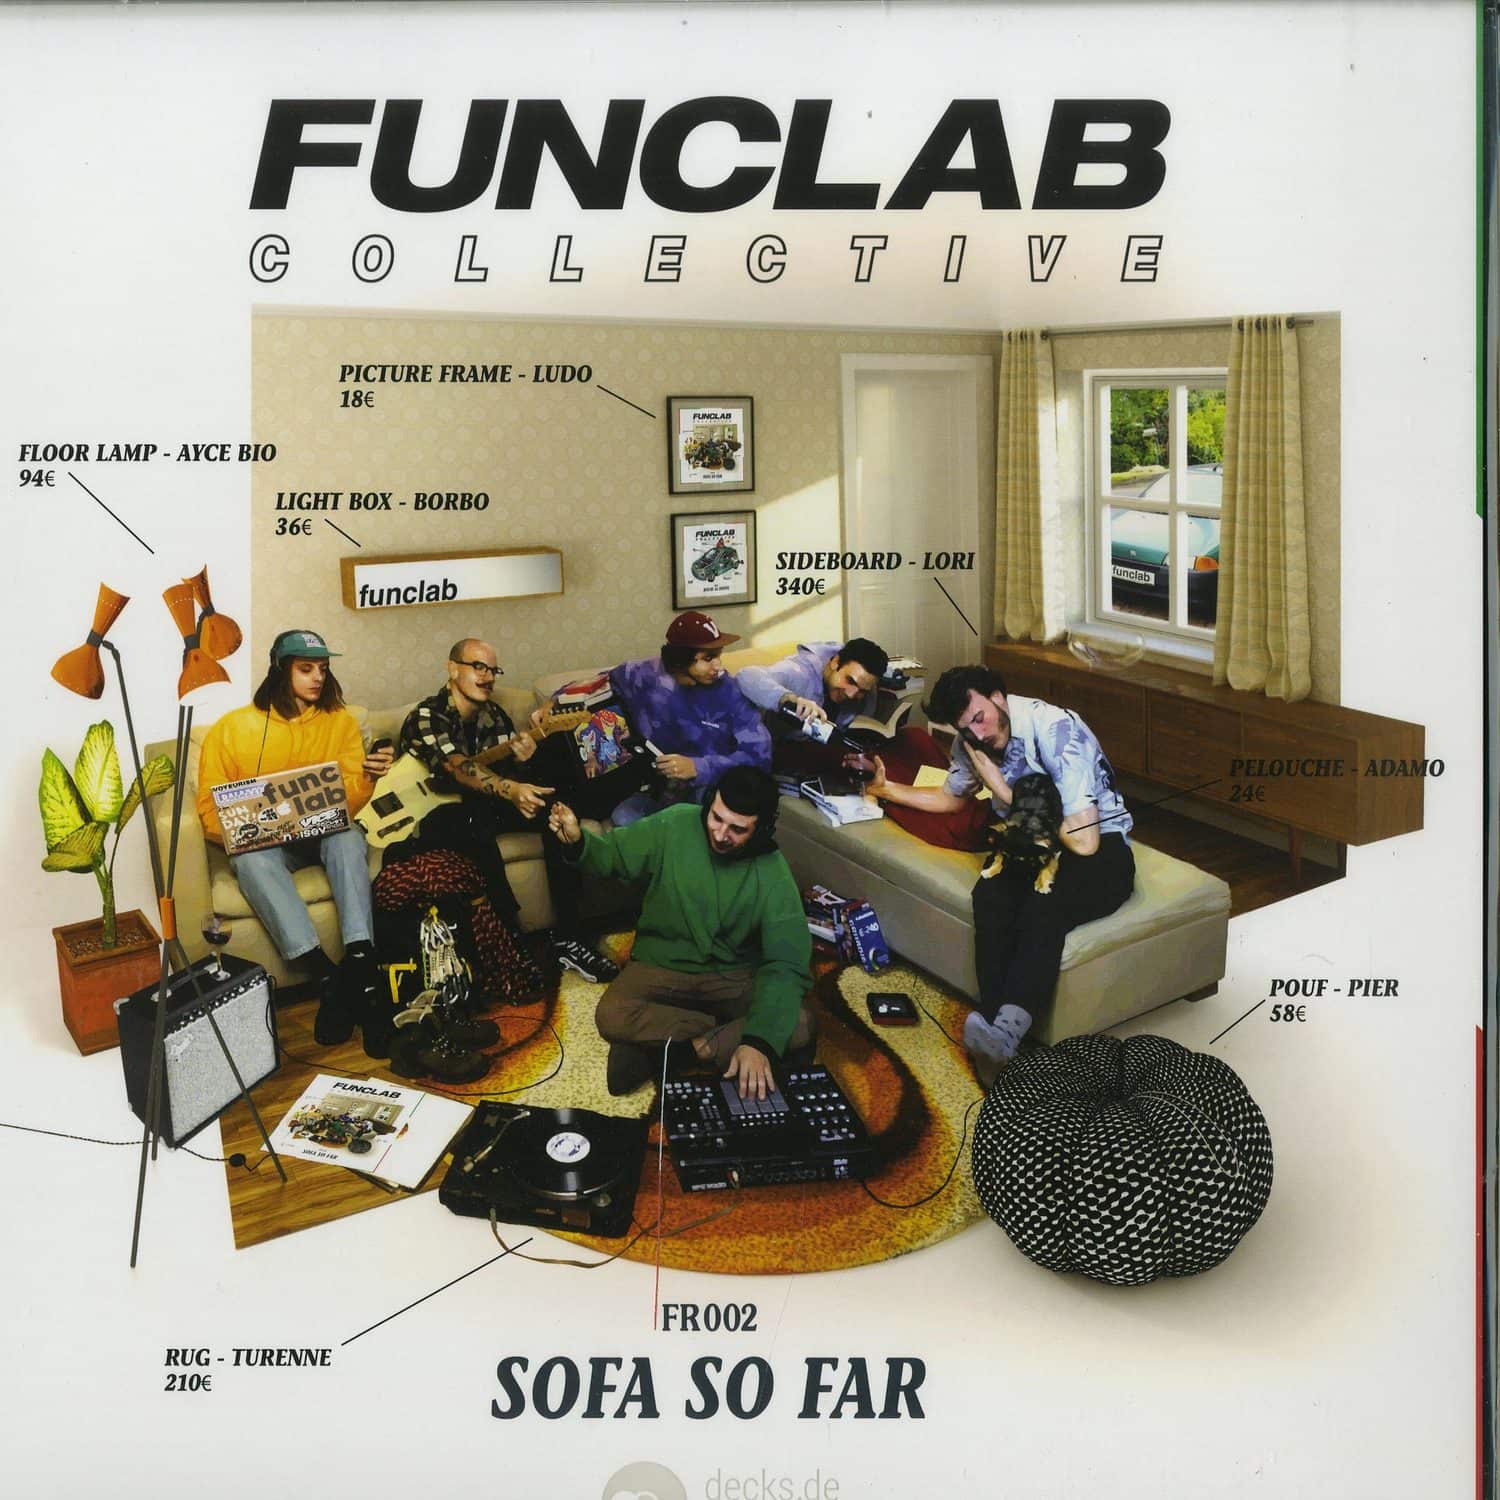 Funclap Collective - SOFA SO FAR